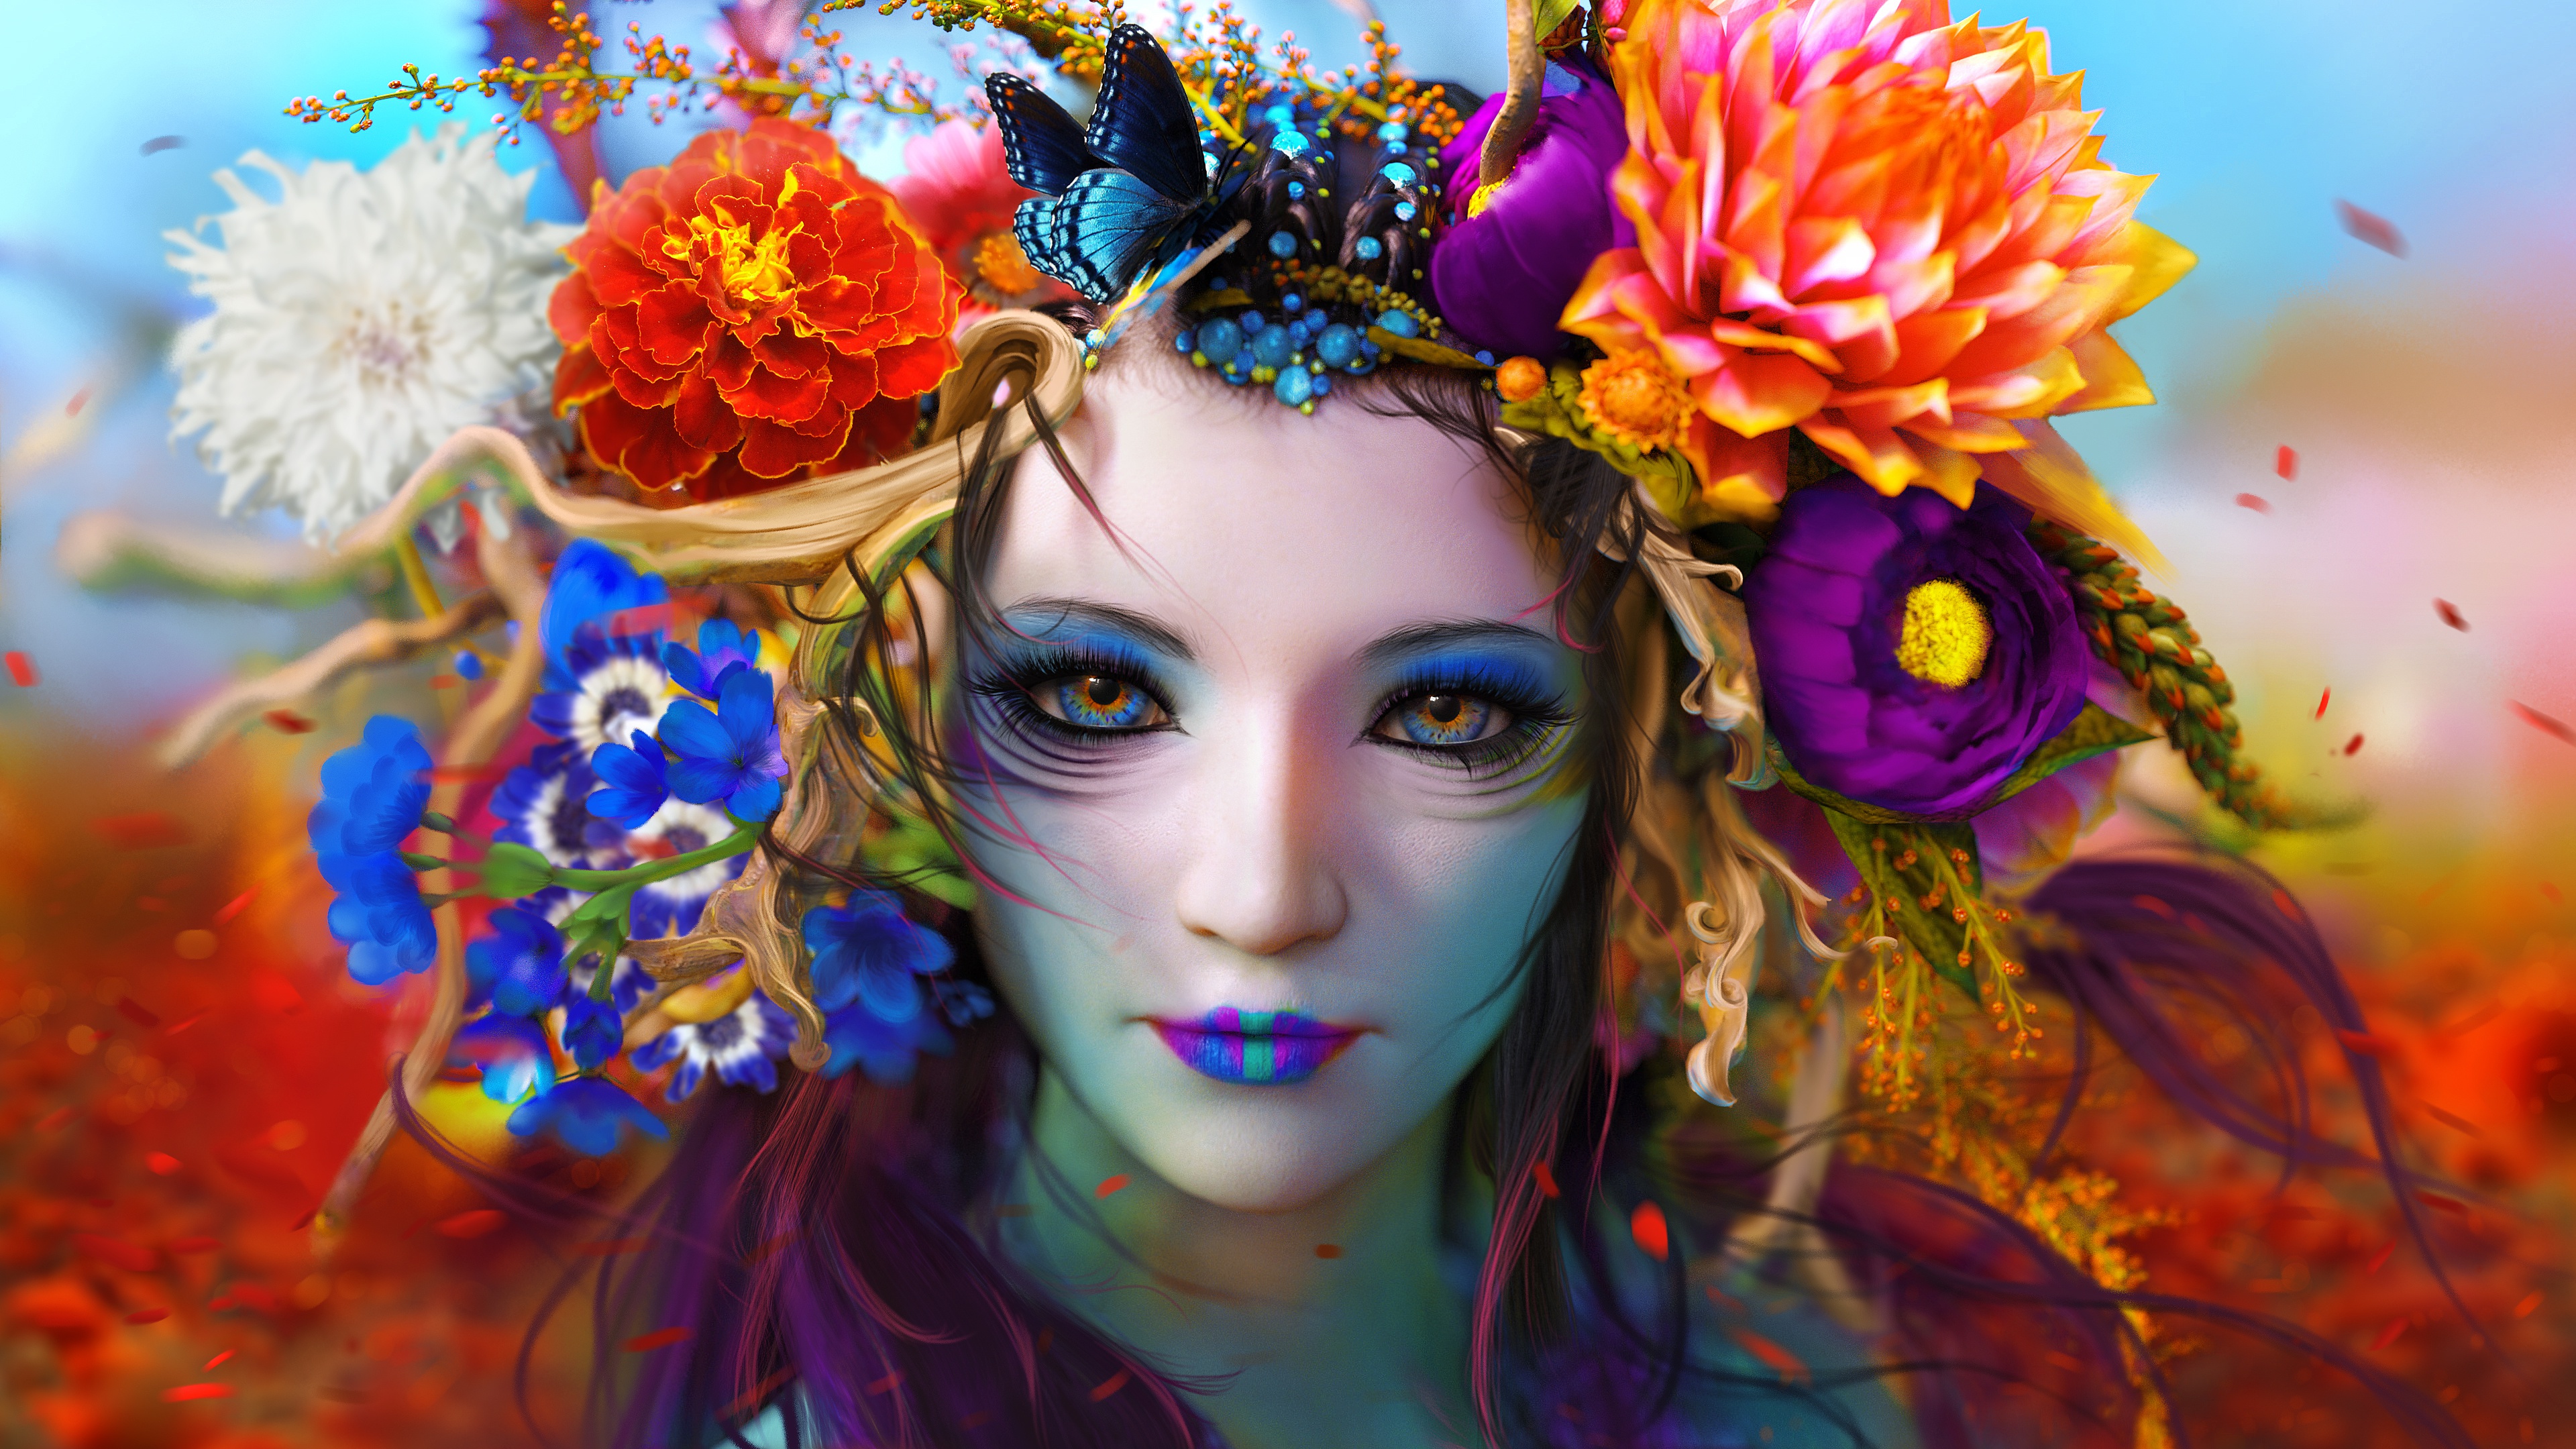 General 3840x2160 colorful face fantasy art artwork fantasy girl digital art